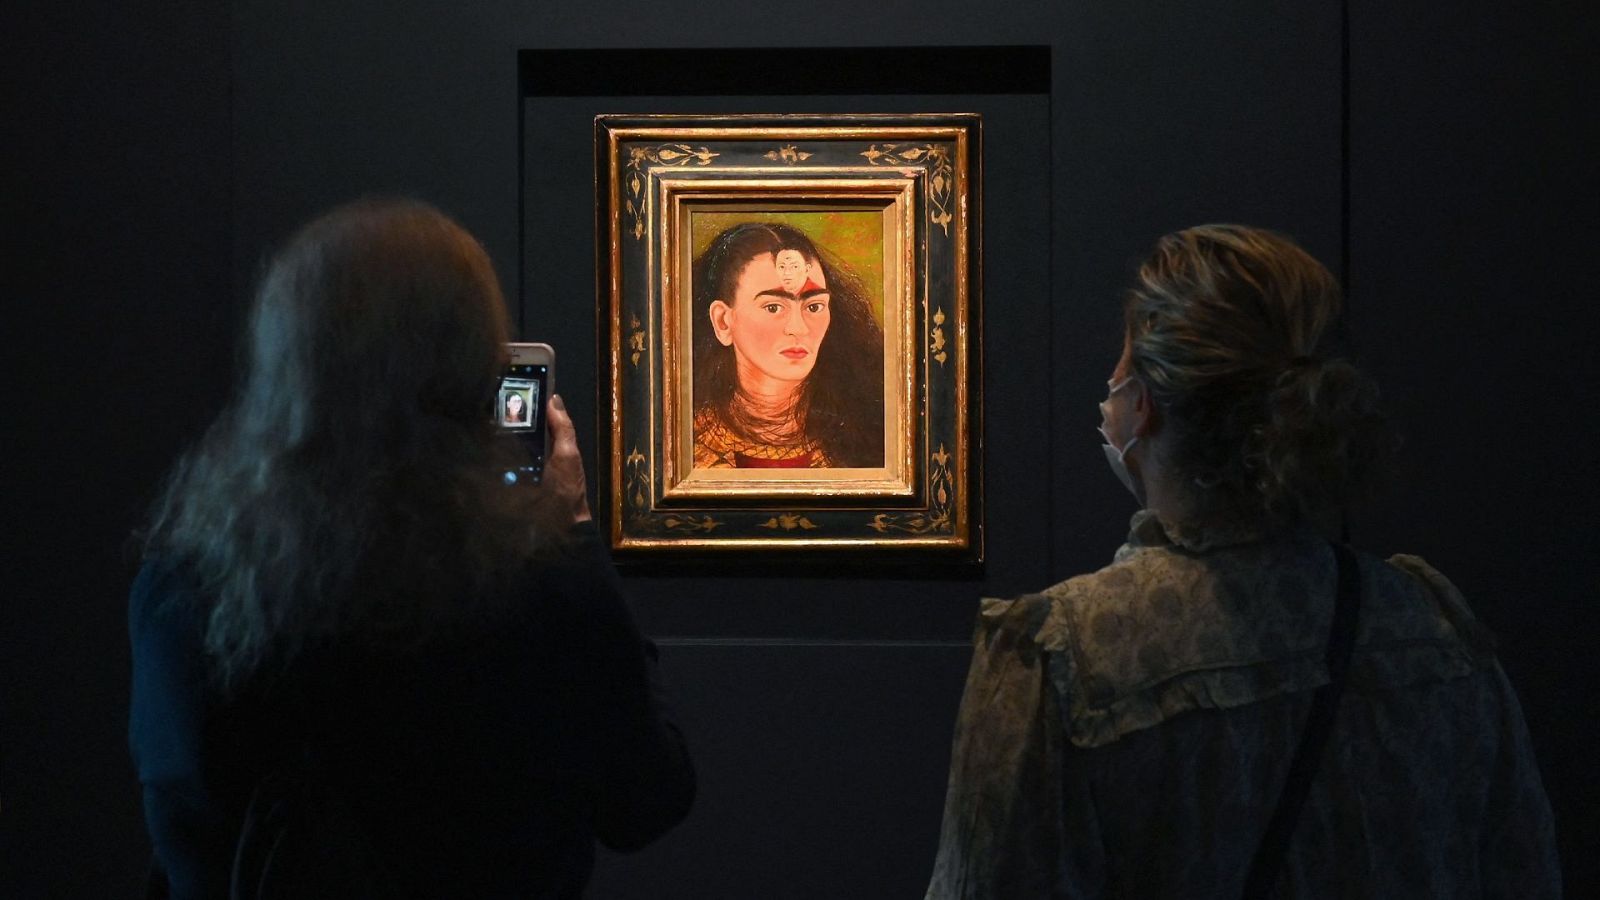 El autorretrato Diego y yo, de Frida Kahlo, en la sala de exposiciones mientras dos personas lo contemplan